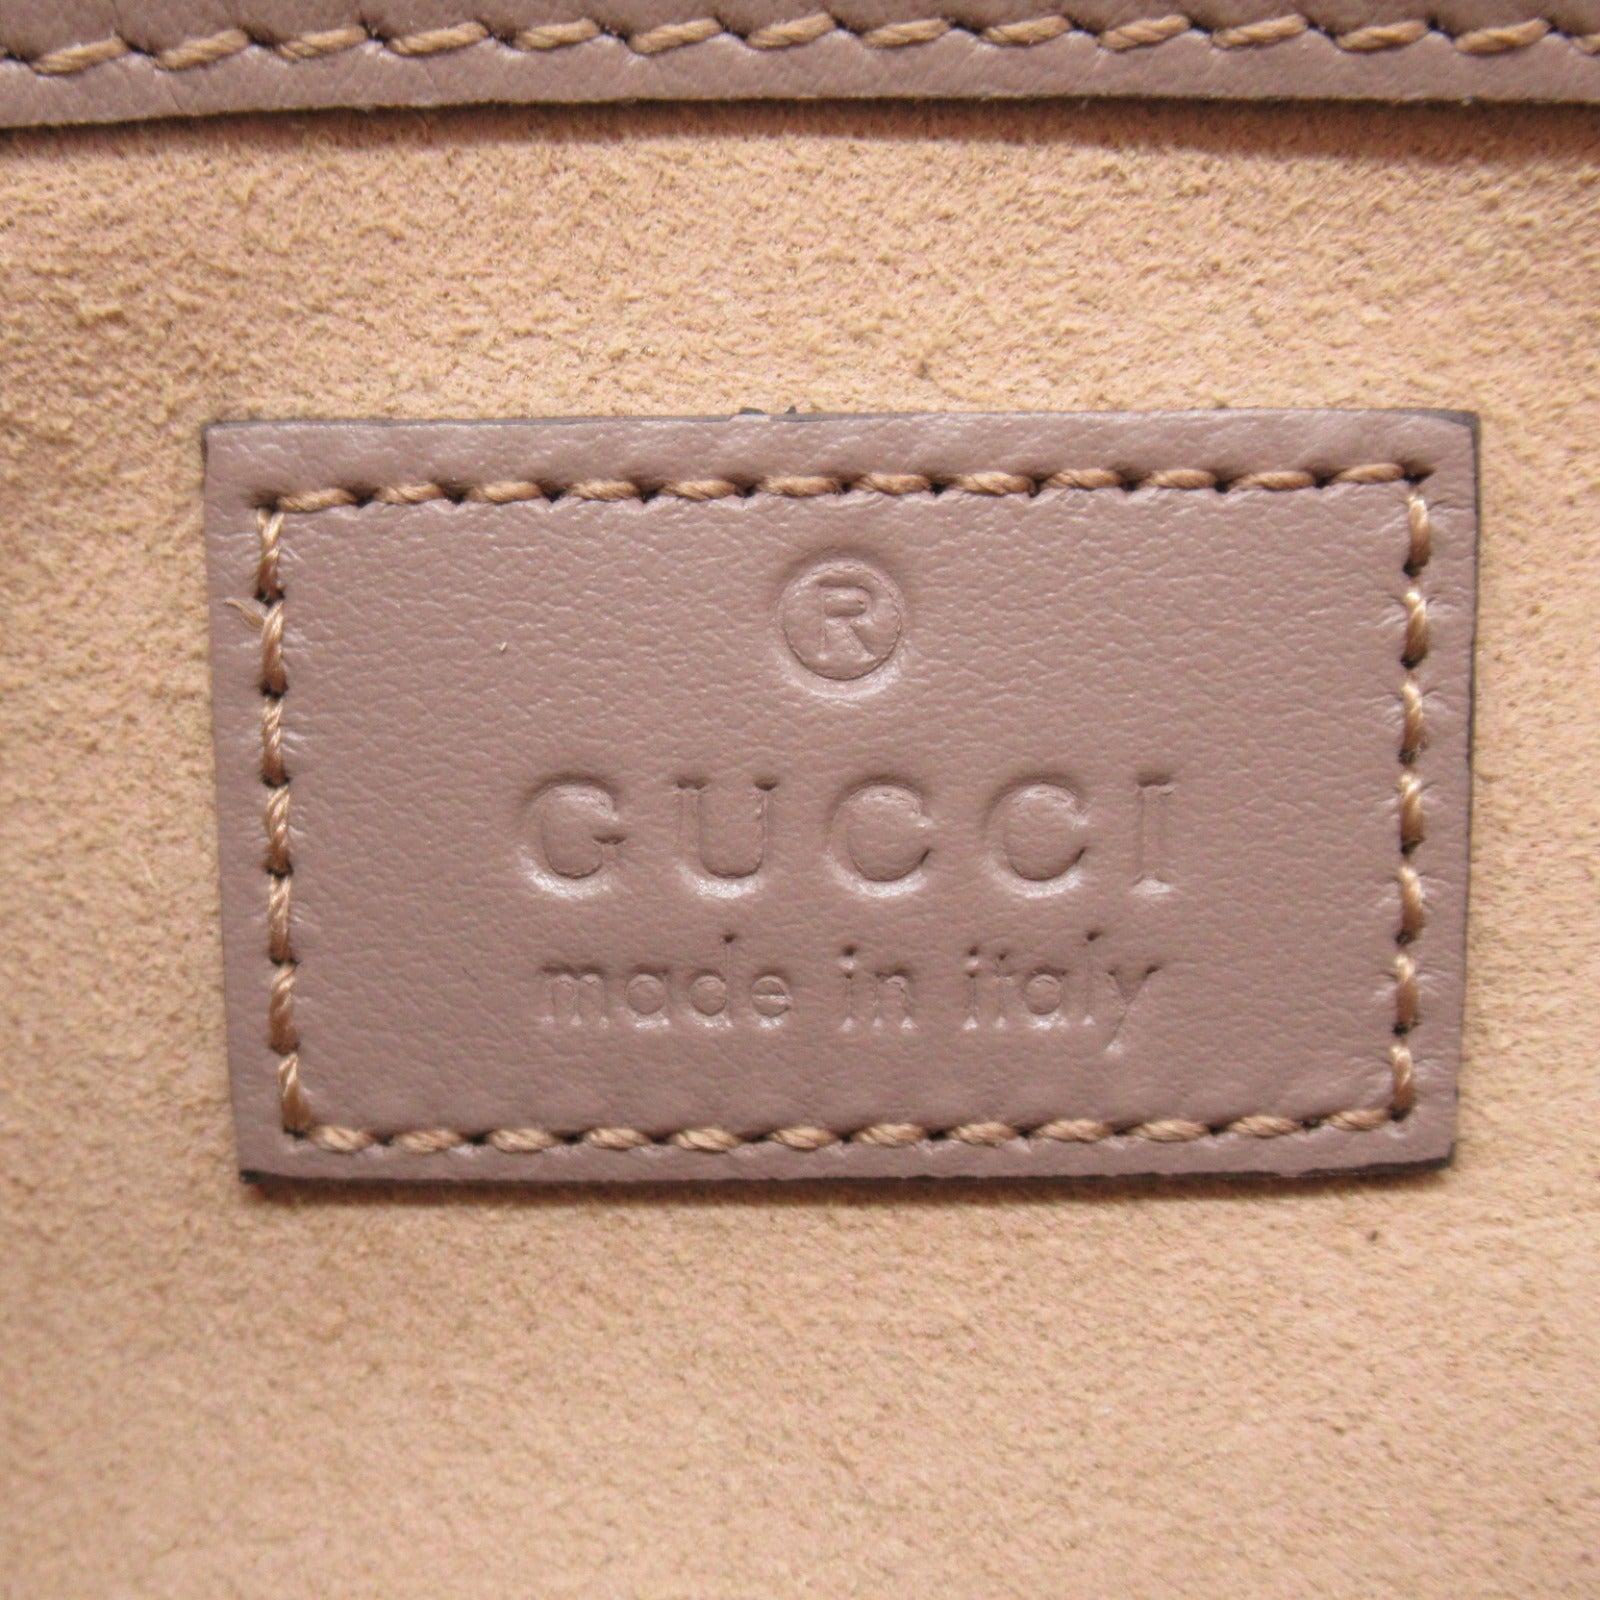 Gucci Chain Shoulder Bag Gucci Chain Shoulder Bag 476433DTDCT5729